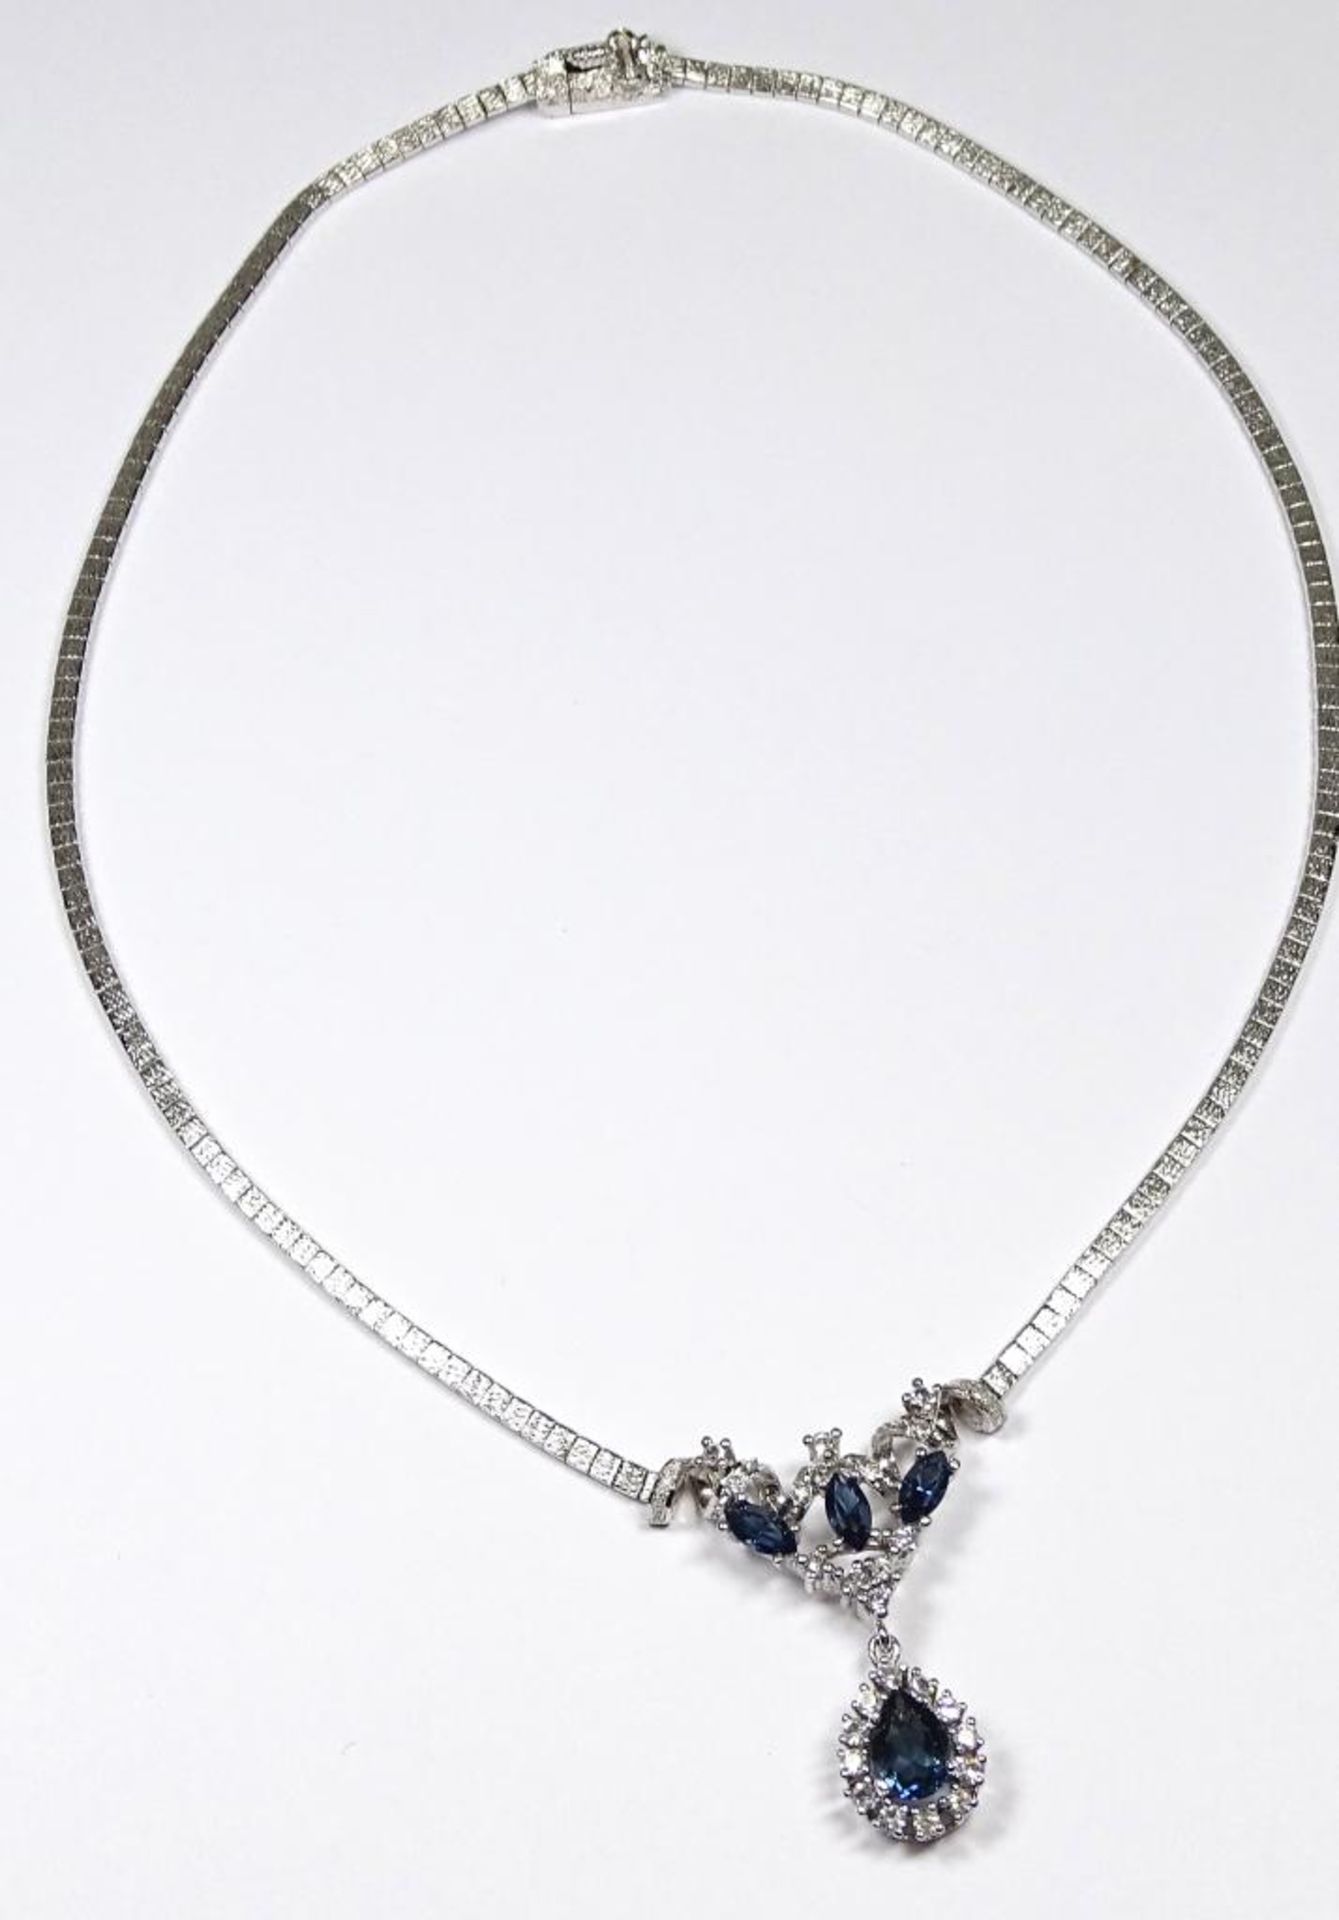 925er Silber Collier mit Zirkone und blauen Steinen,L- 44cm, 23,9gr.